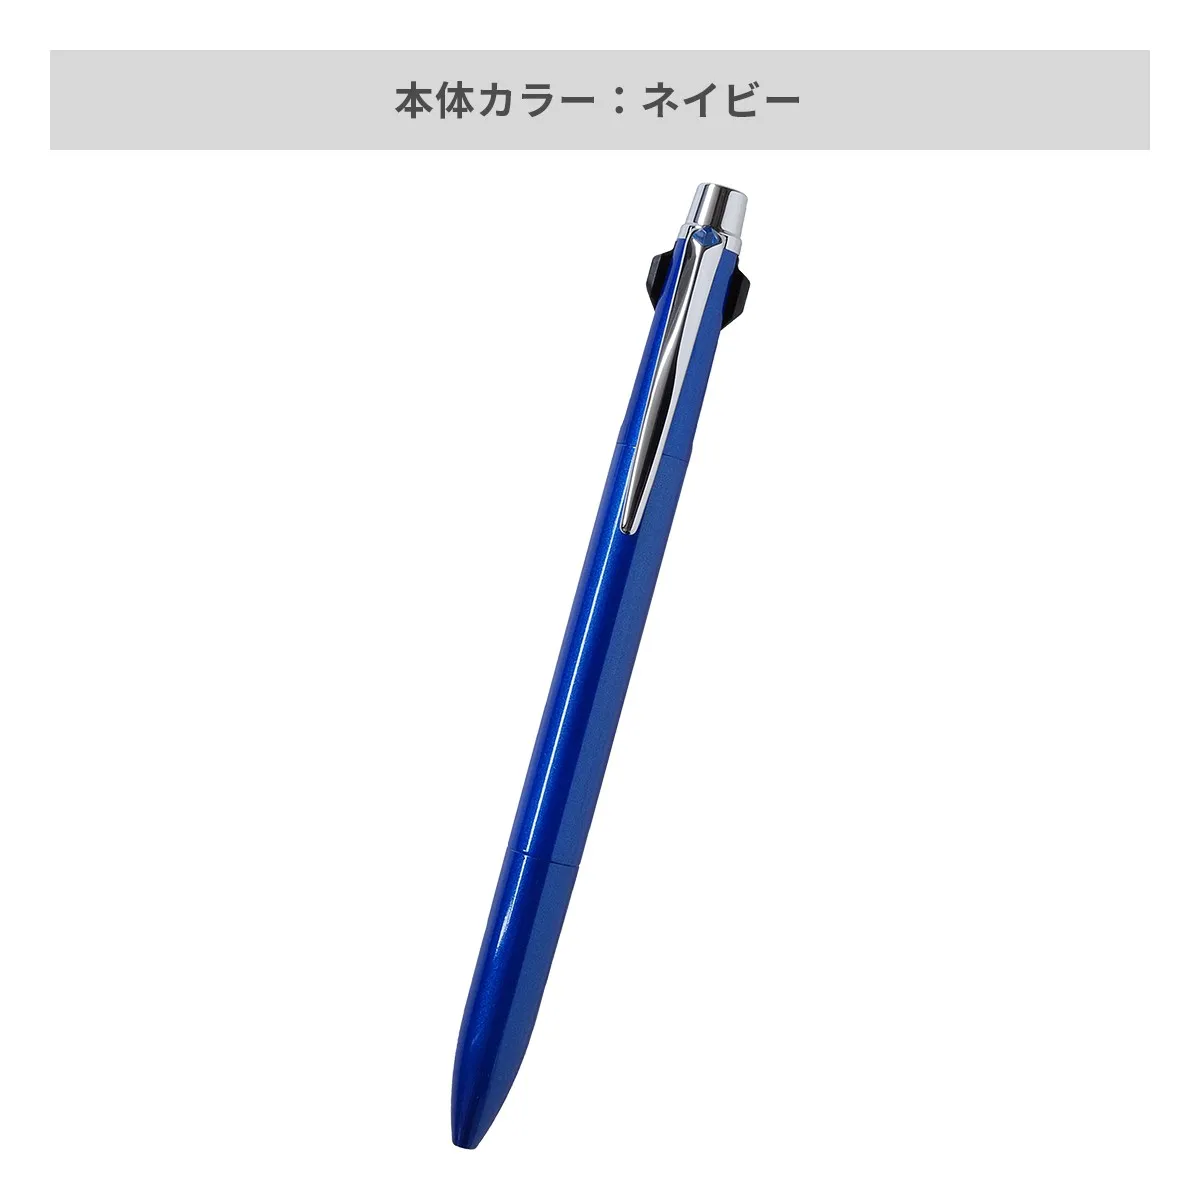 【短納期】三菱鉛筆 ジェットストリーム プライム 3色ボールペン 0.7mm【名入れボールペン / レーザー彫刻】 画像4